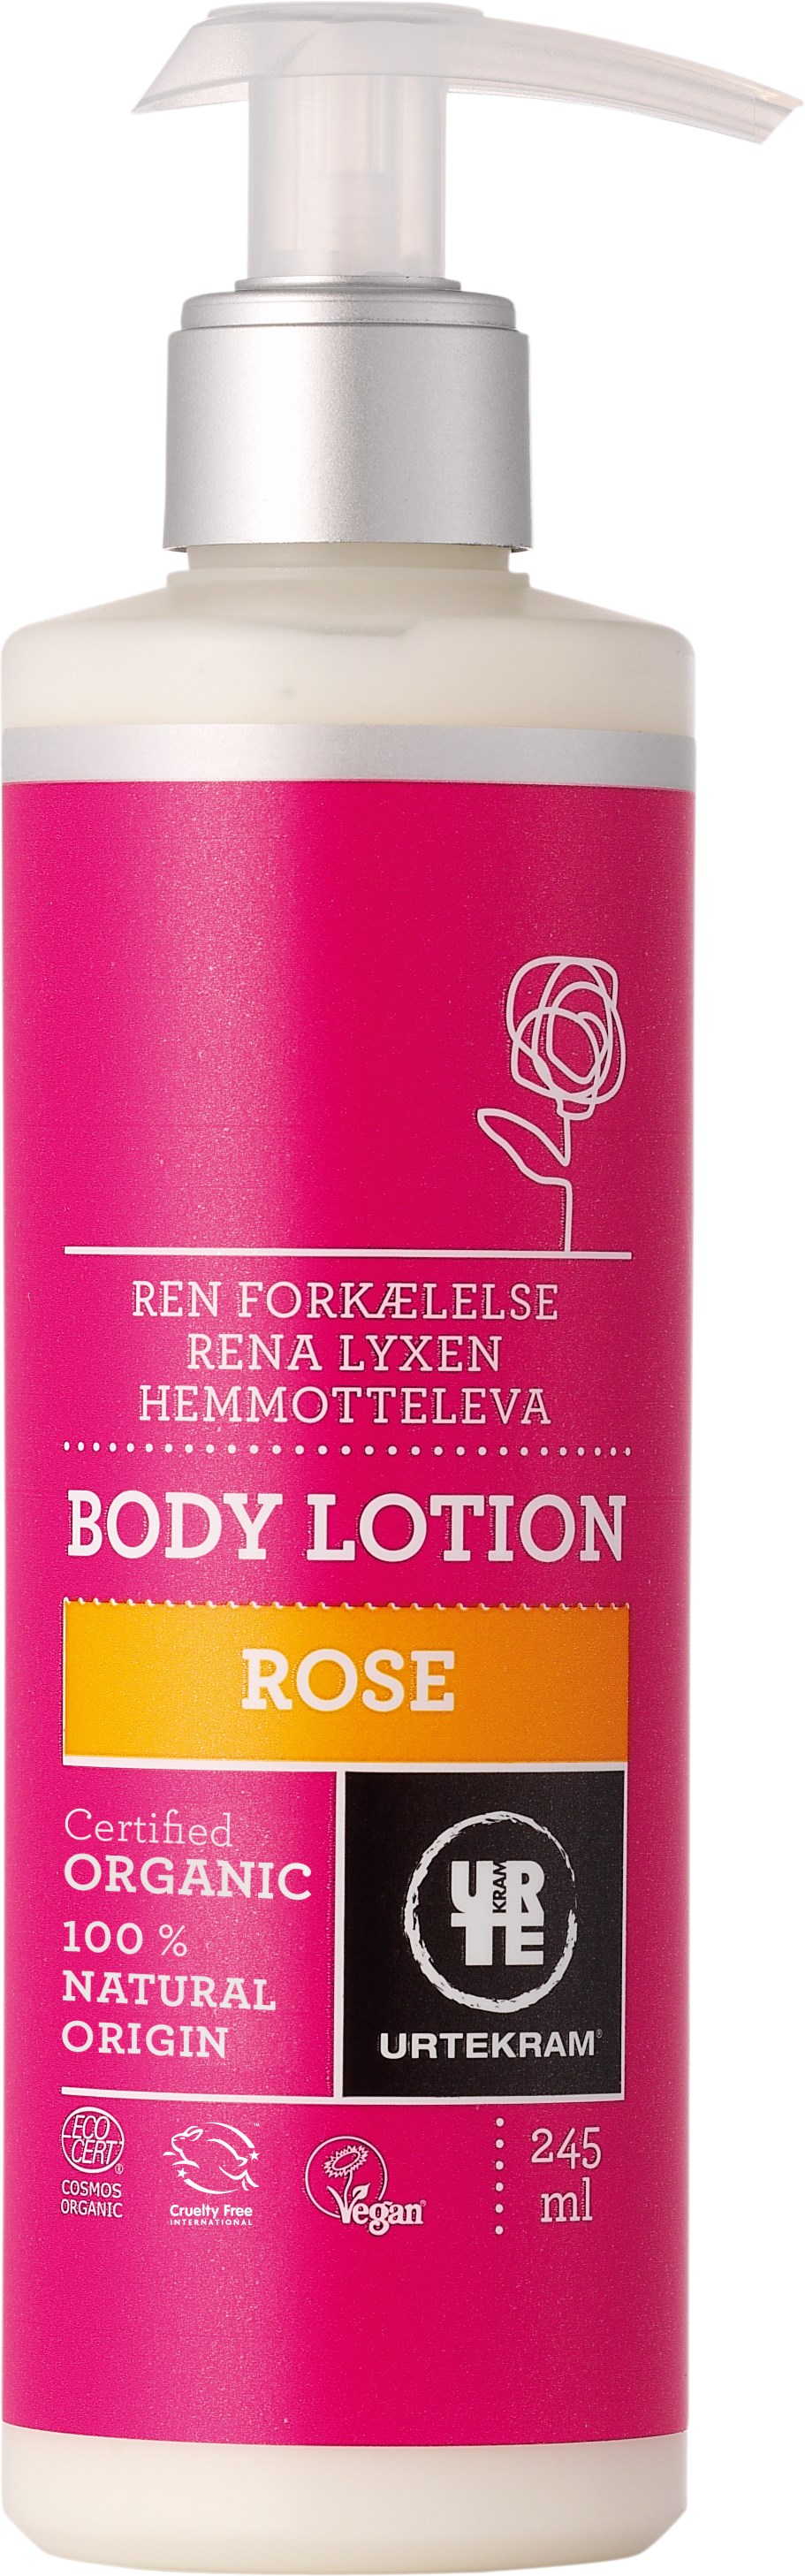 Urtekram Rose Body Lotion 245ml